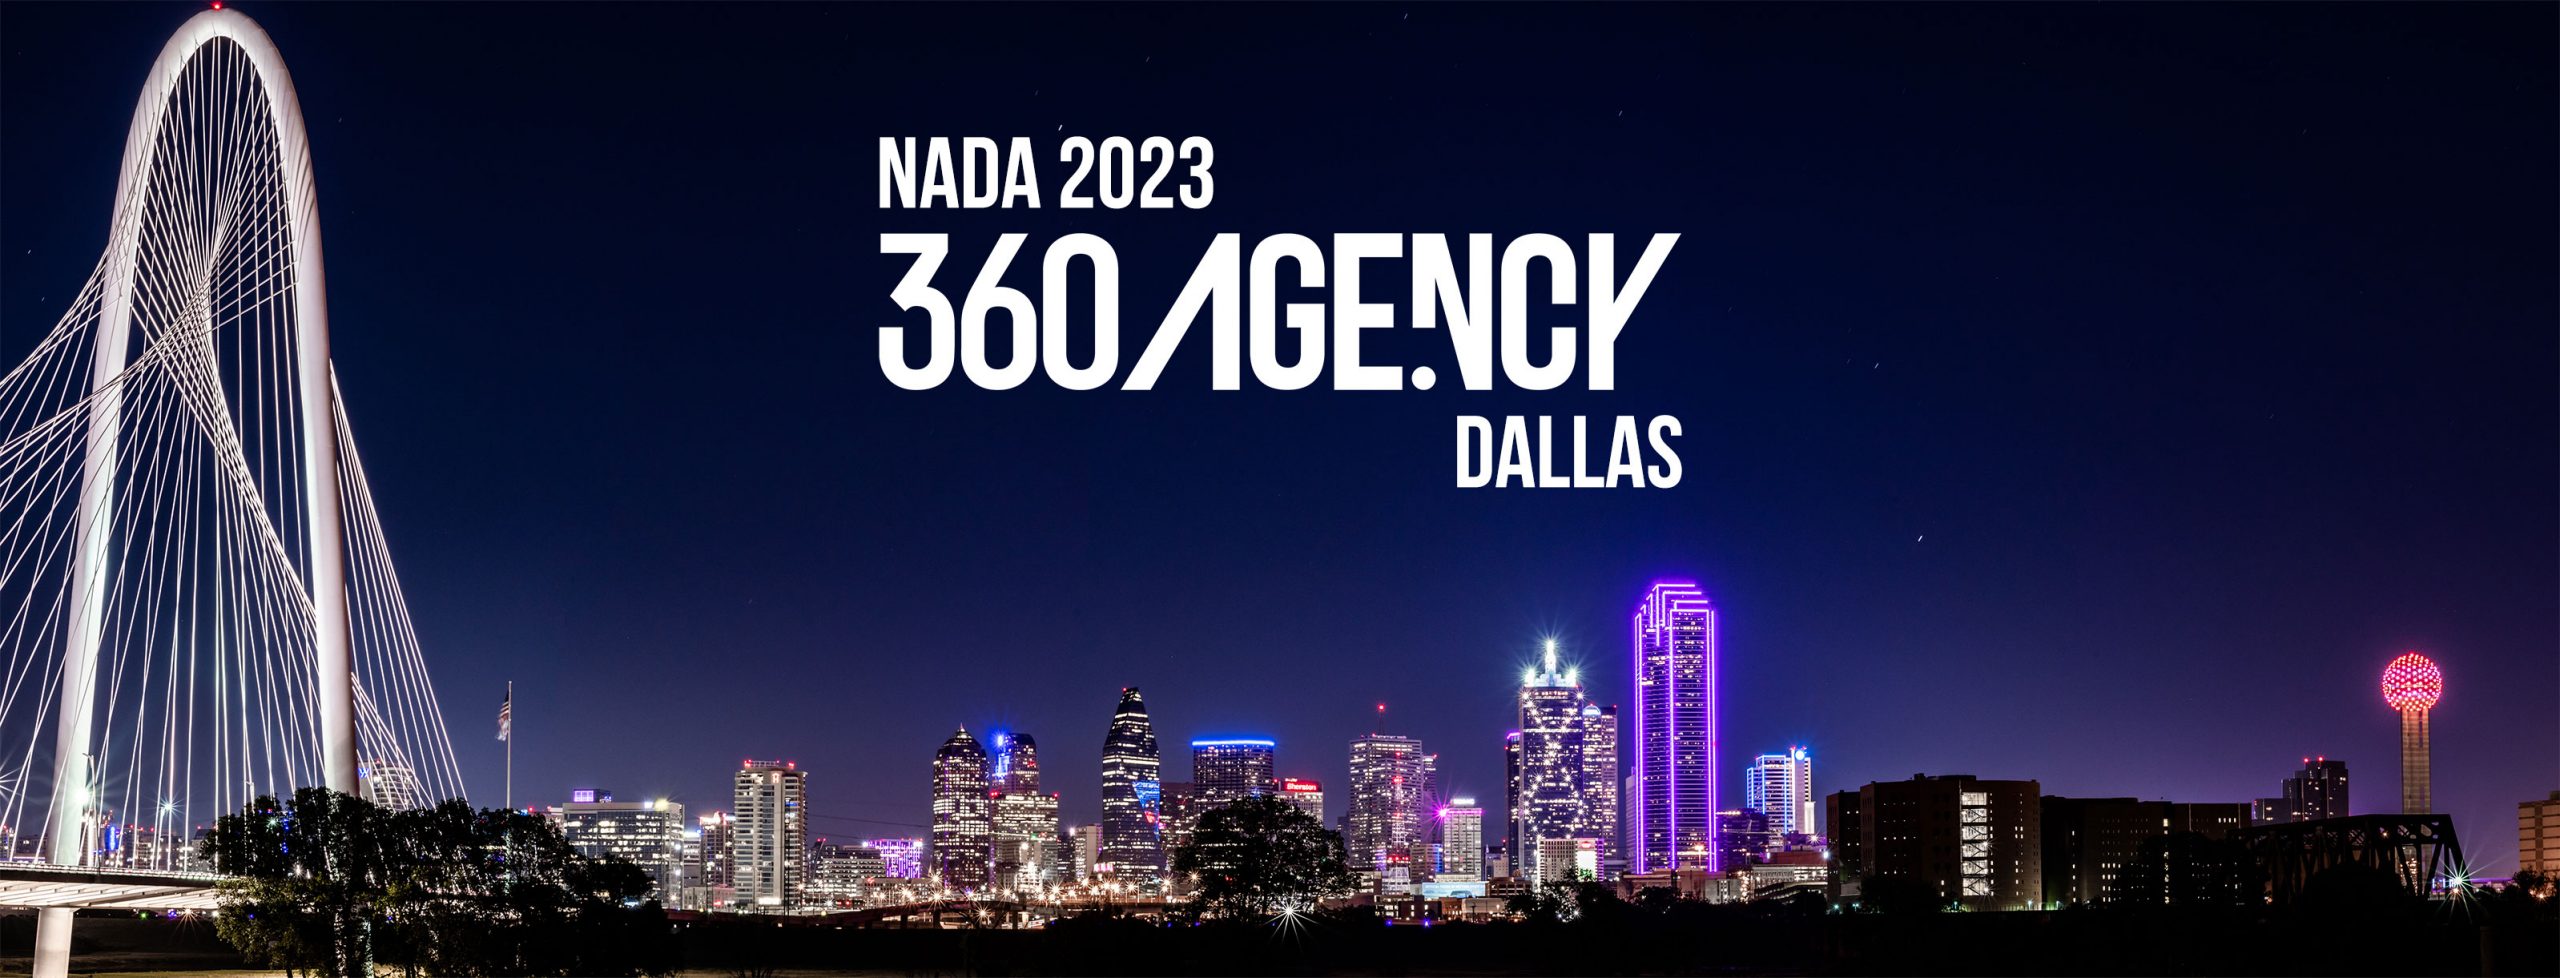 360.Agency in Dallas NADA 2023